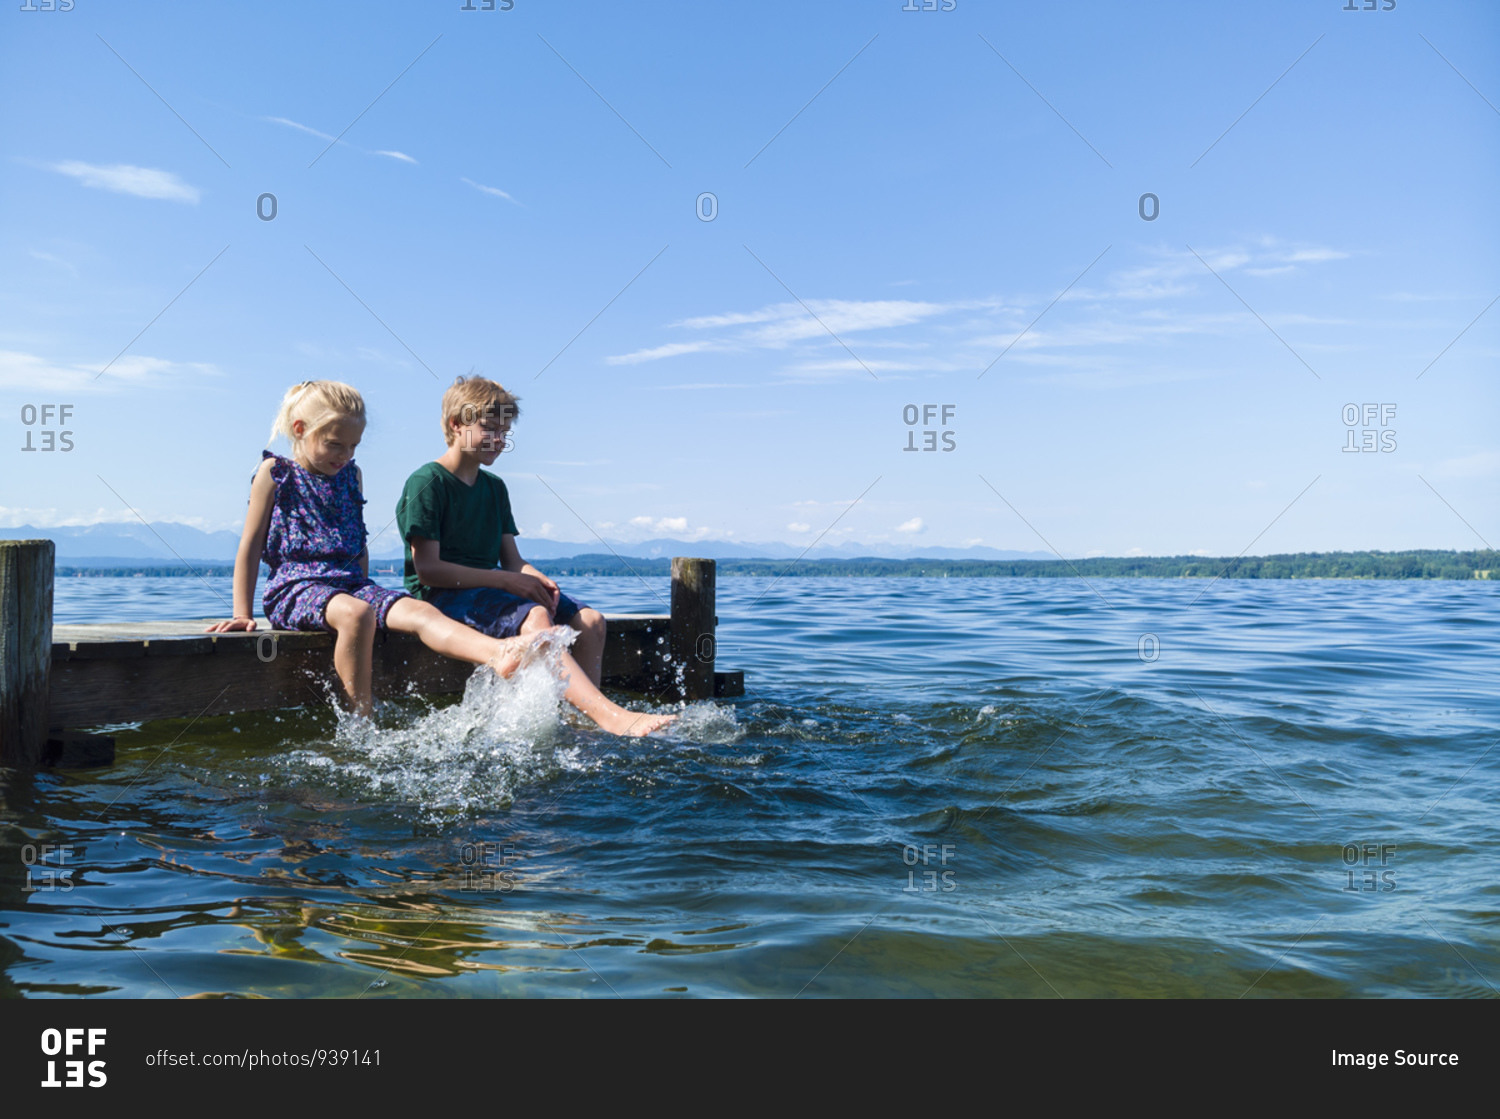 Siblings cooling feet in water, Lake Starnberg, Bavaria, Germany